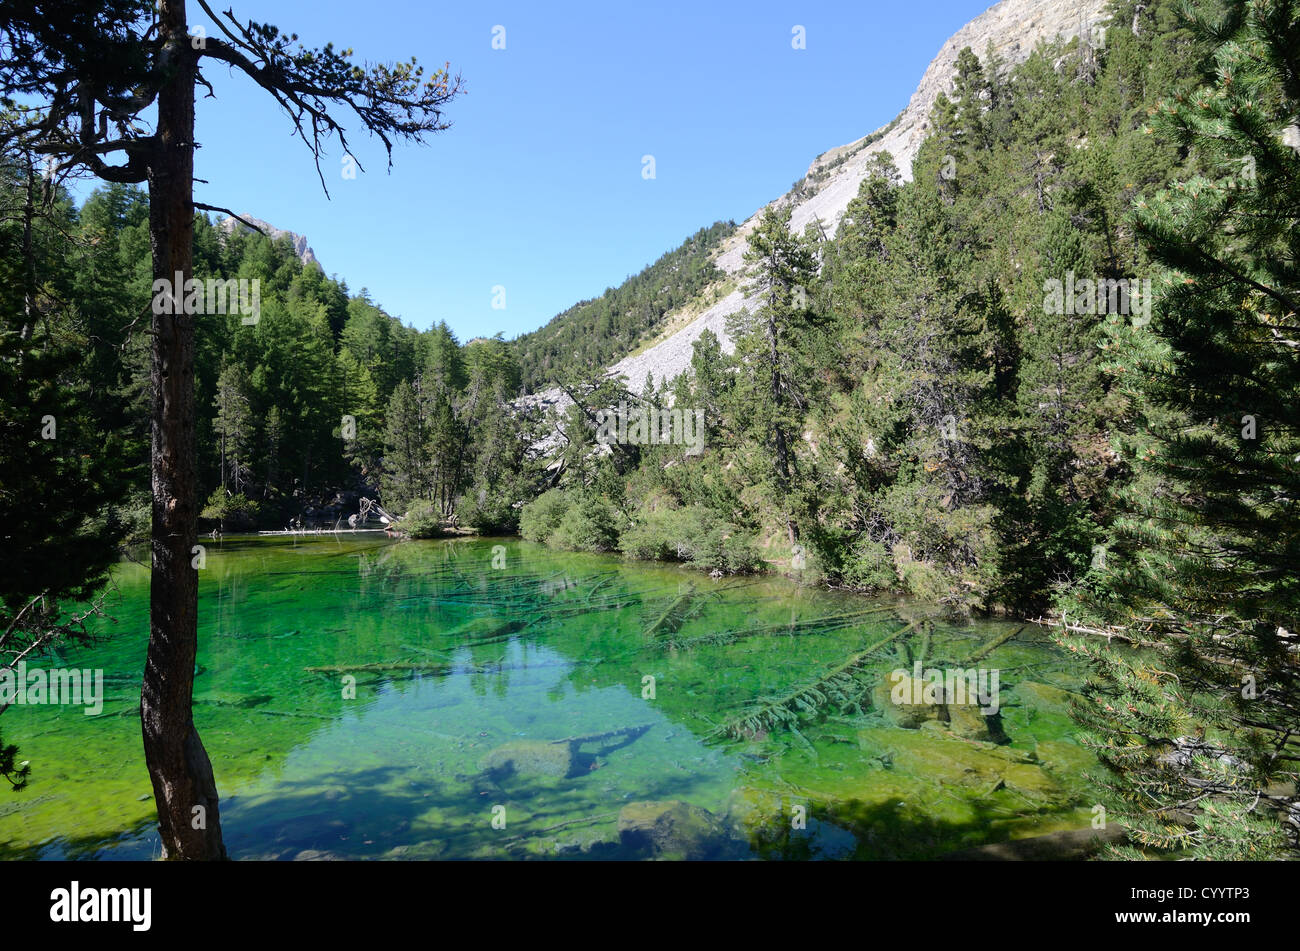 Der schöne von Fir gesäumte Lac Vert oder Green Lake Etroite Valley oder Vallée Etroite Névache Hautes-Alpes Franch Alps Frankreich Stockfoto